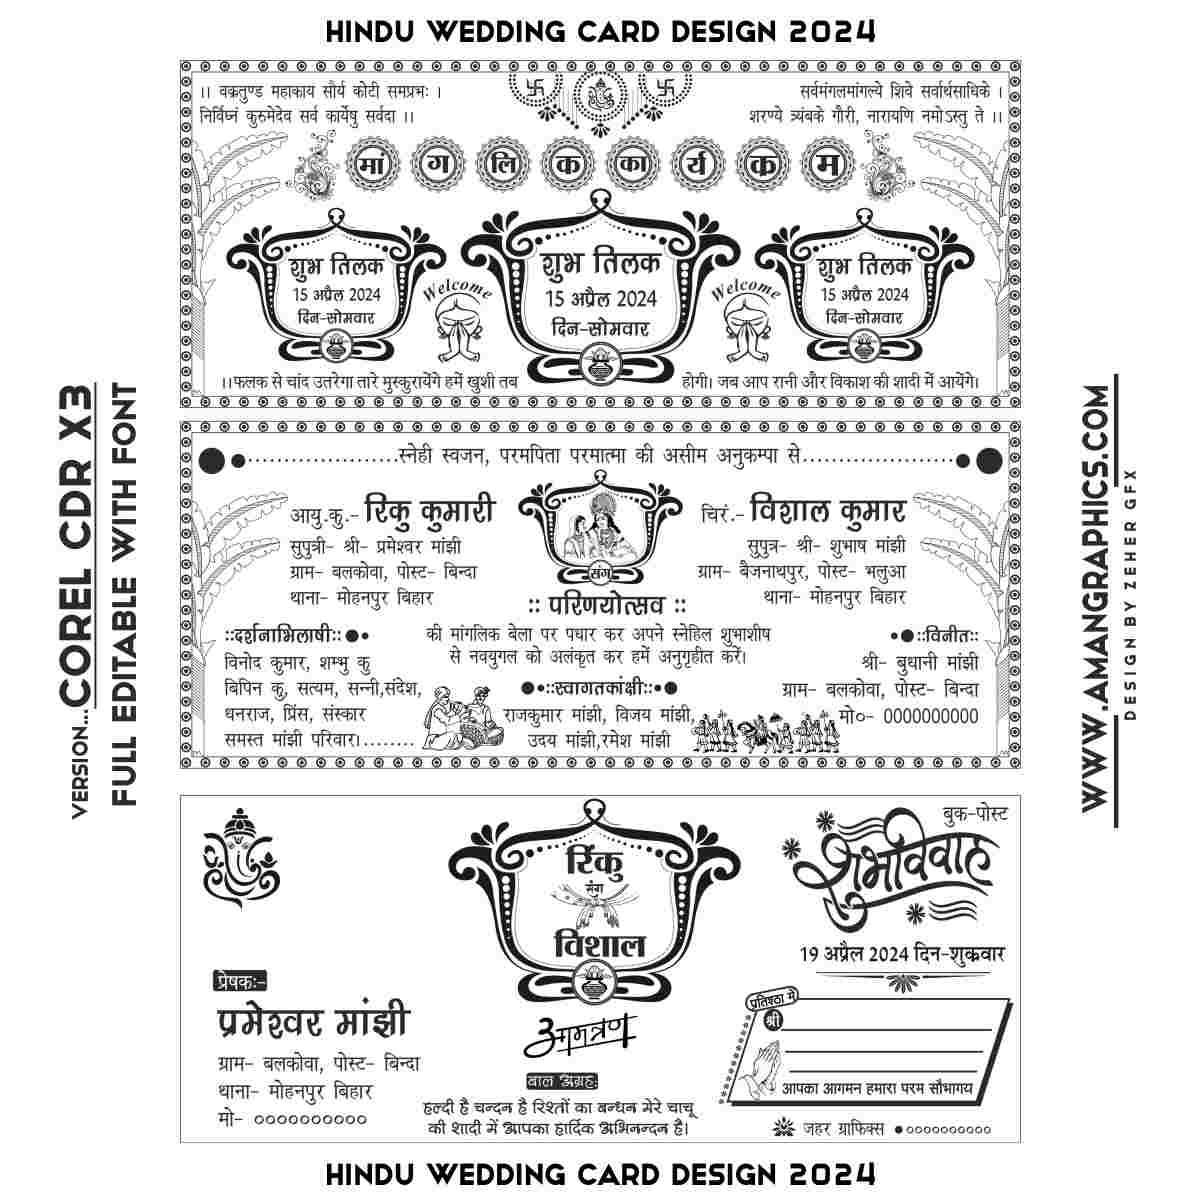 Fancy Hindu Wedding Card New Design 2024 Cdr FIle WEDDING CARD WEDDING CARD HINDI